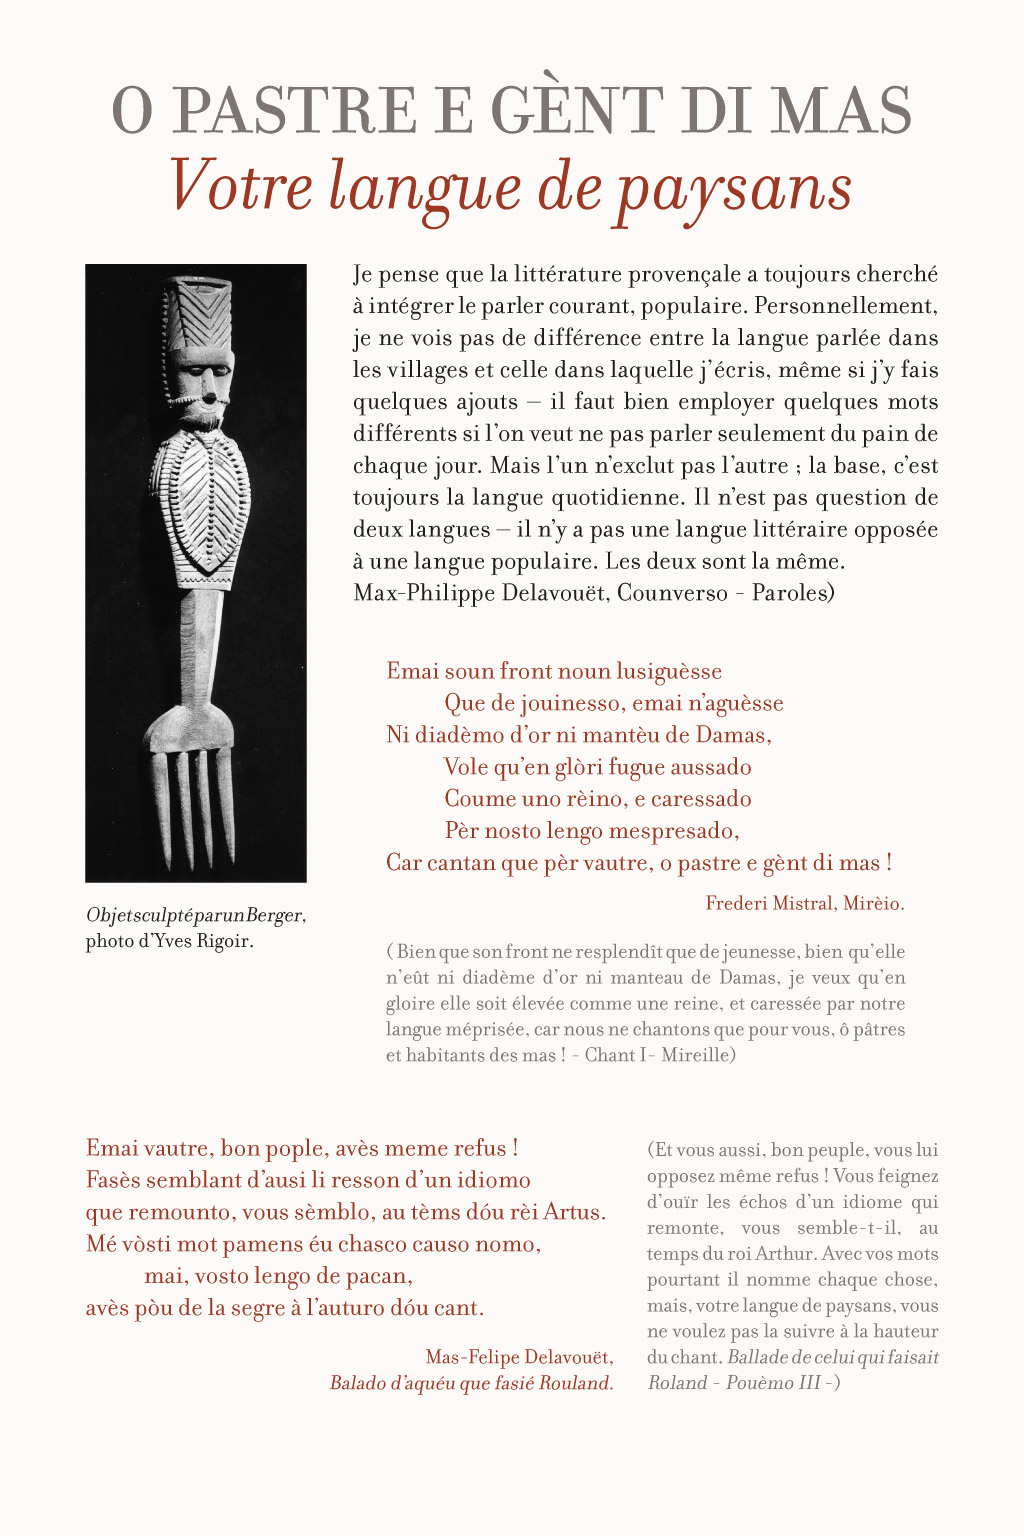 Panneau de l'exposition "Frédéric Mistral, Max-Philippe Delavouët, Dans la langue du poème" à Maillane